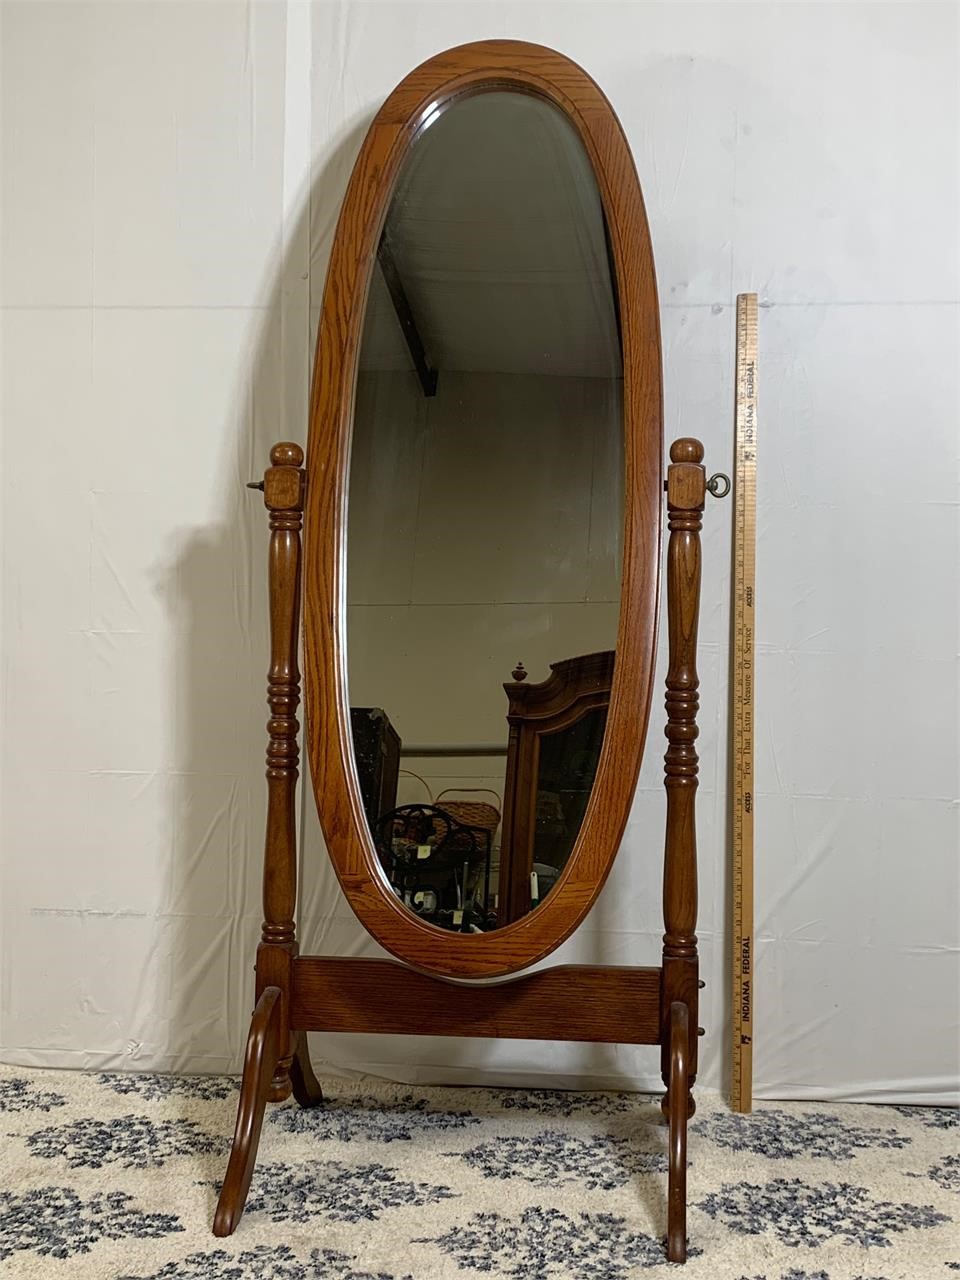 Oak Oval Mirror